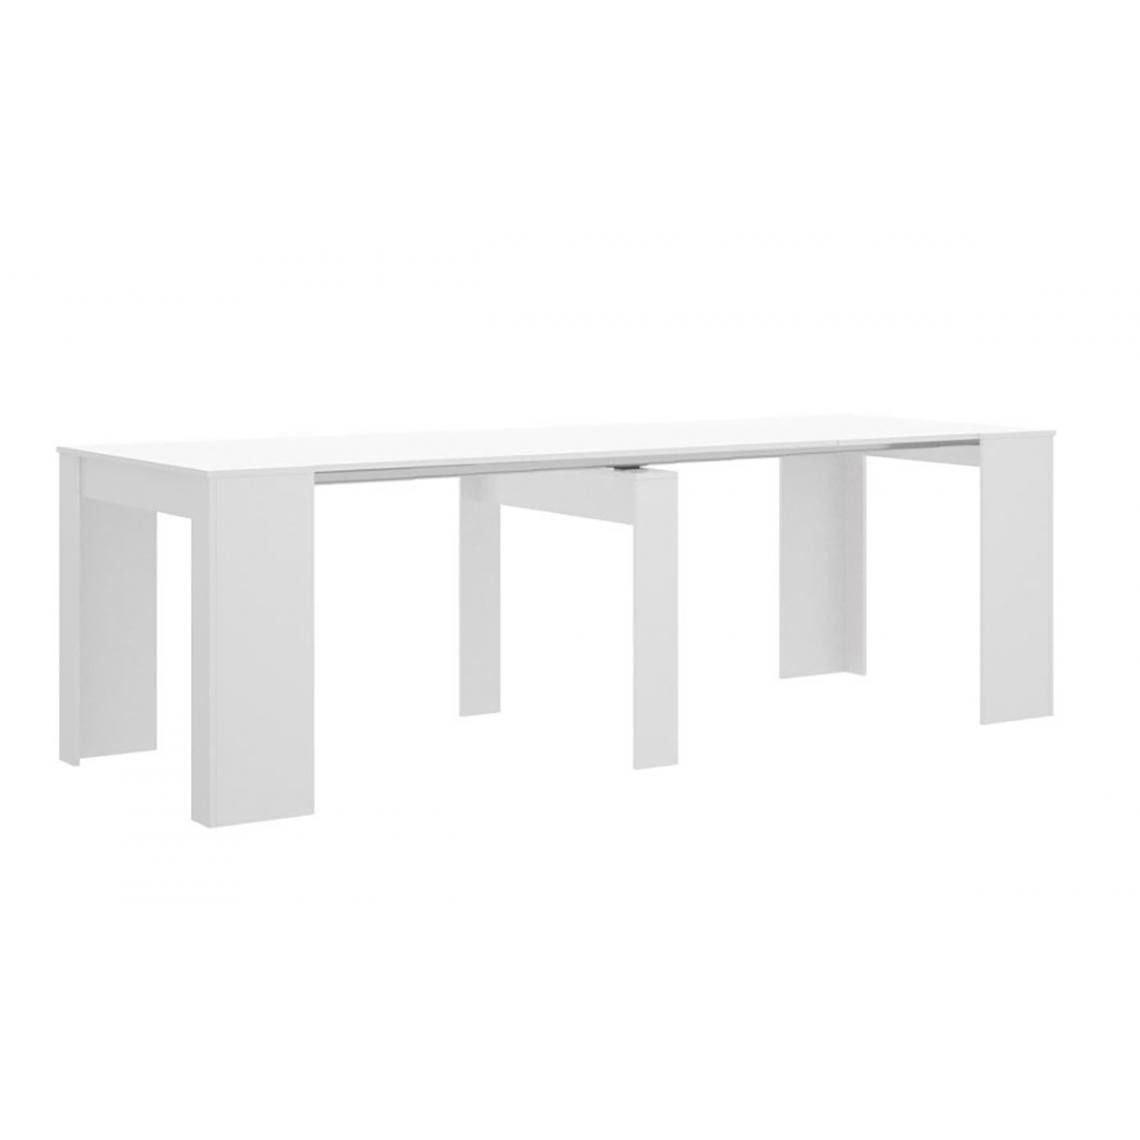 Pegane - Table console extensible en chêne blanc brillant - Longueur 54-239 x Hauteur 77 x Profondeur 90 cm - Consoles